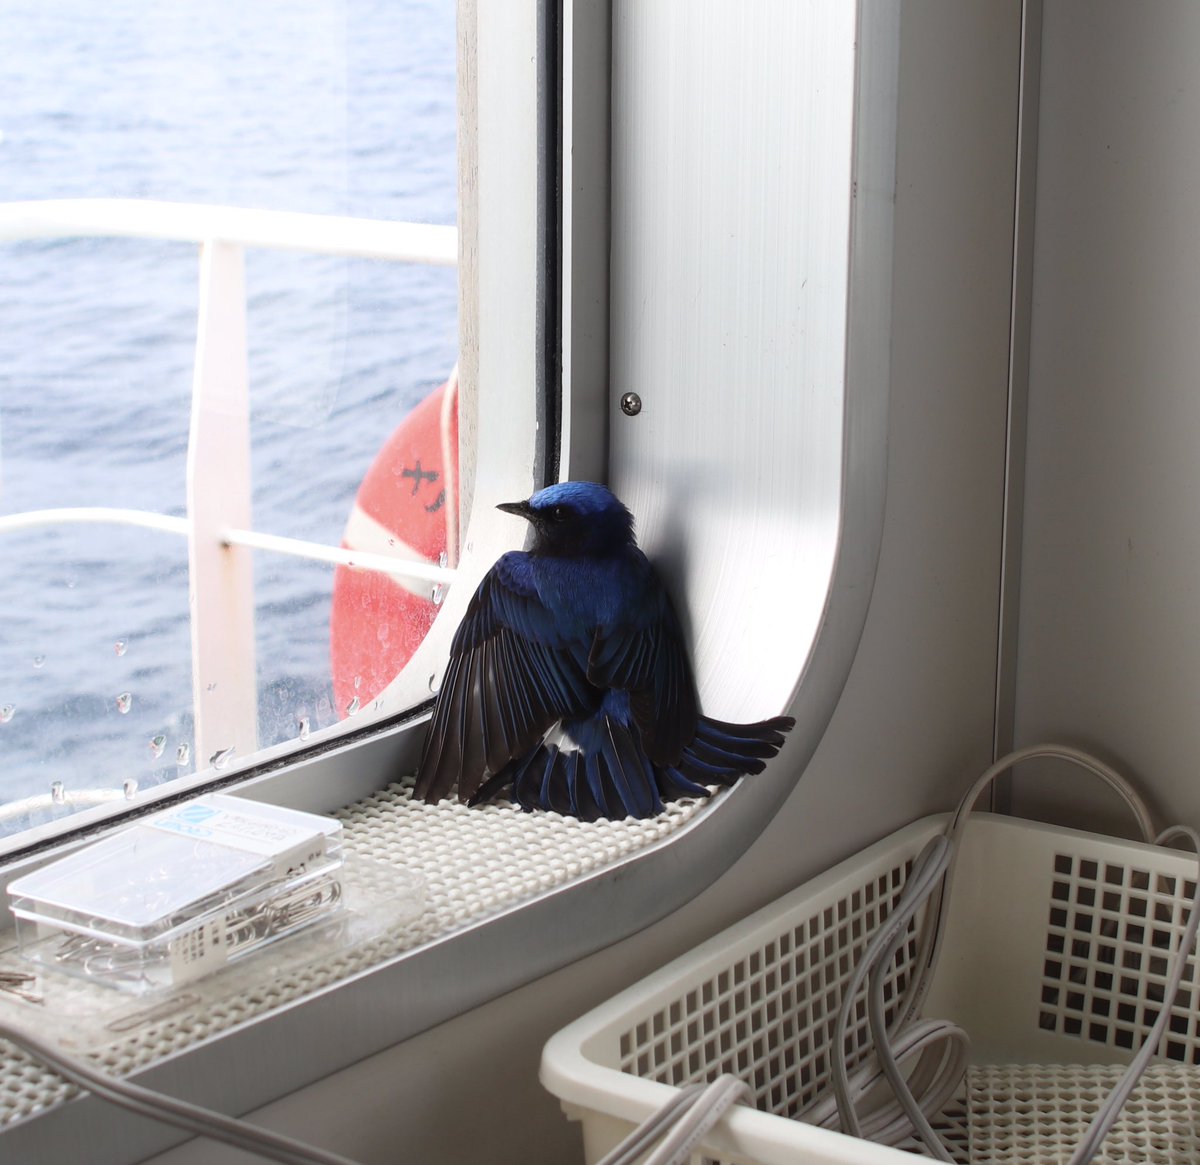 船のブリッジに見たことない青い鳥が休憩しに来たよ めっちゃ綺麗 これなんて鳥 正体判明 珍しい Togetter